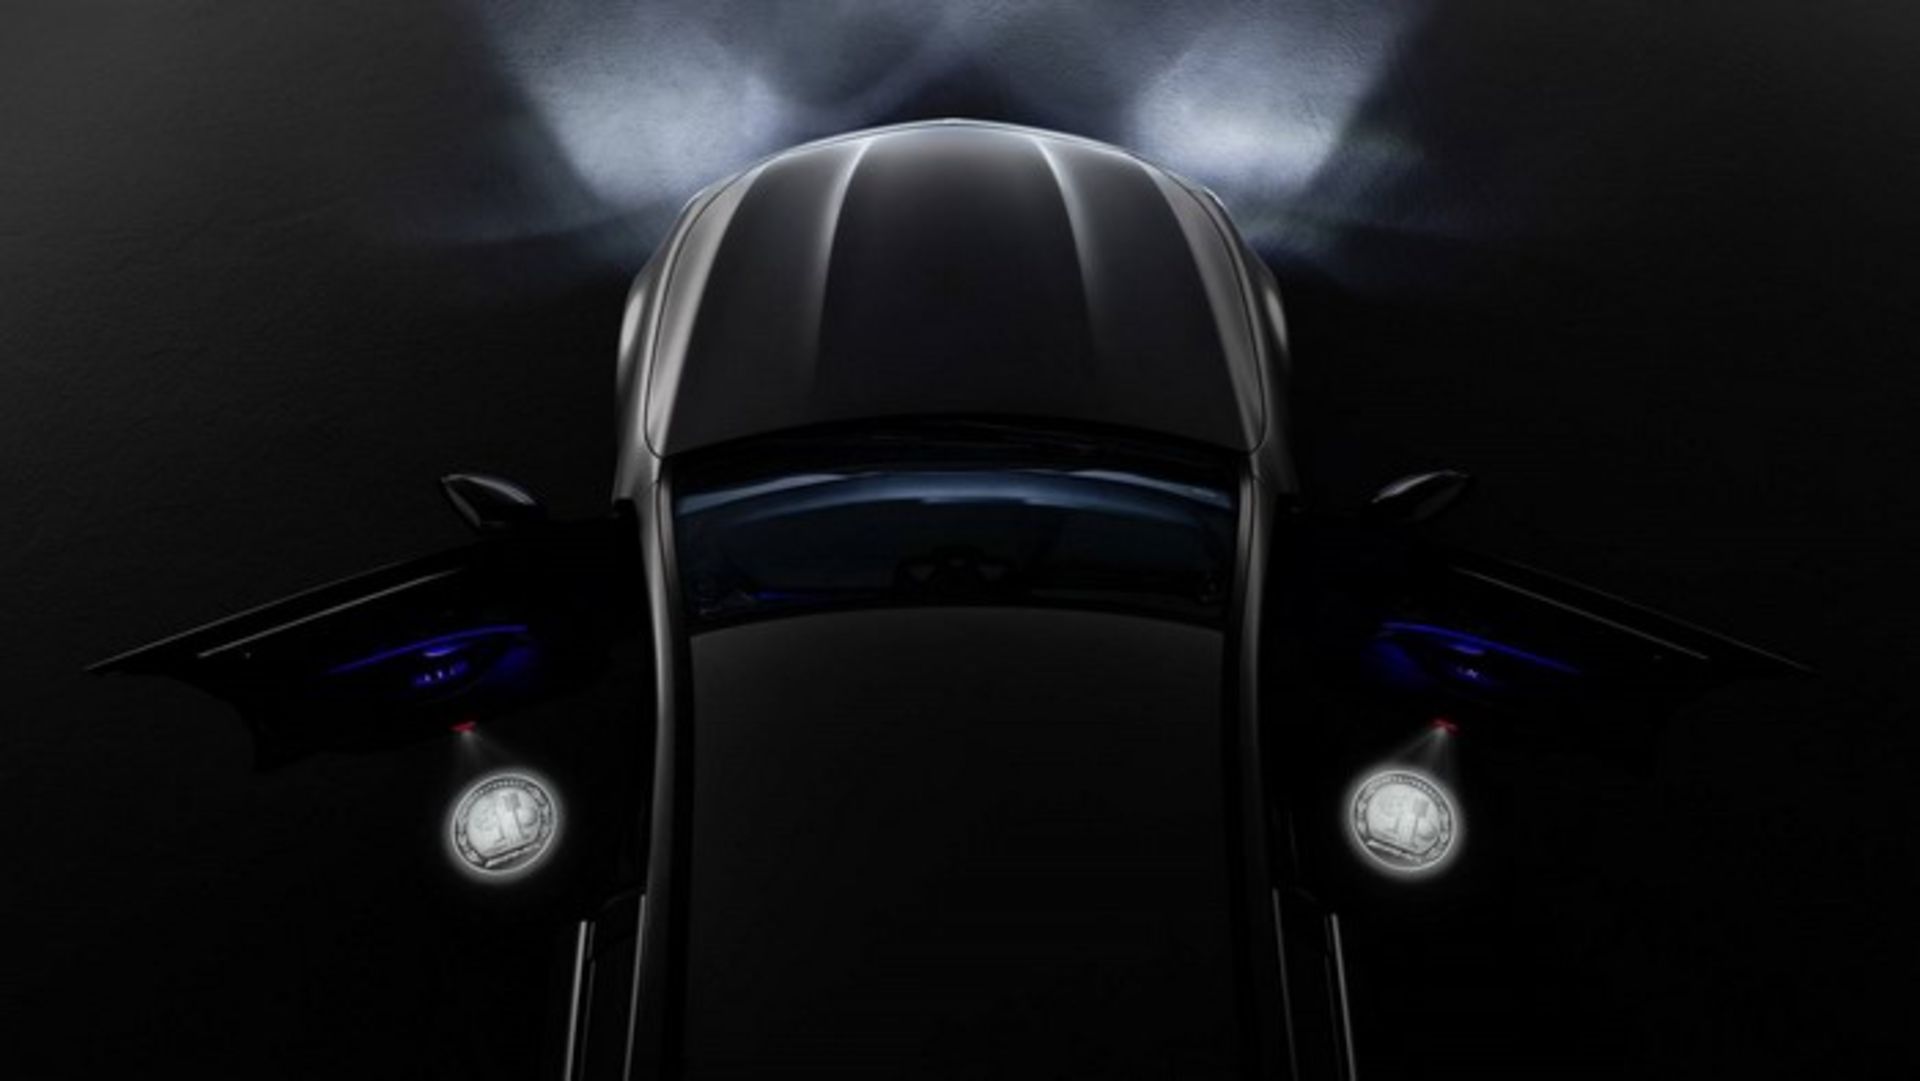 Mercedes-AMG LED door projector